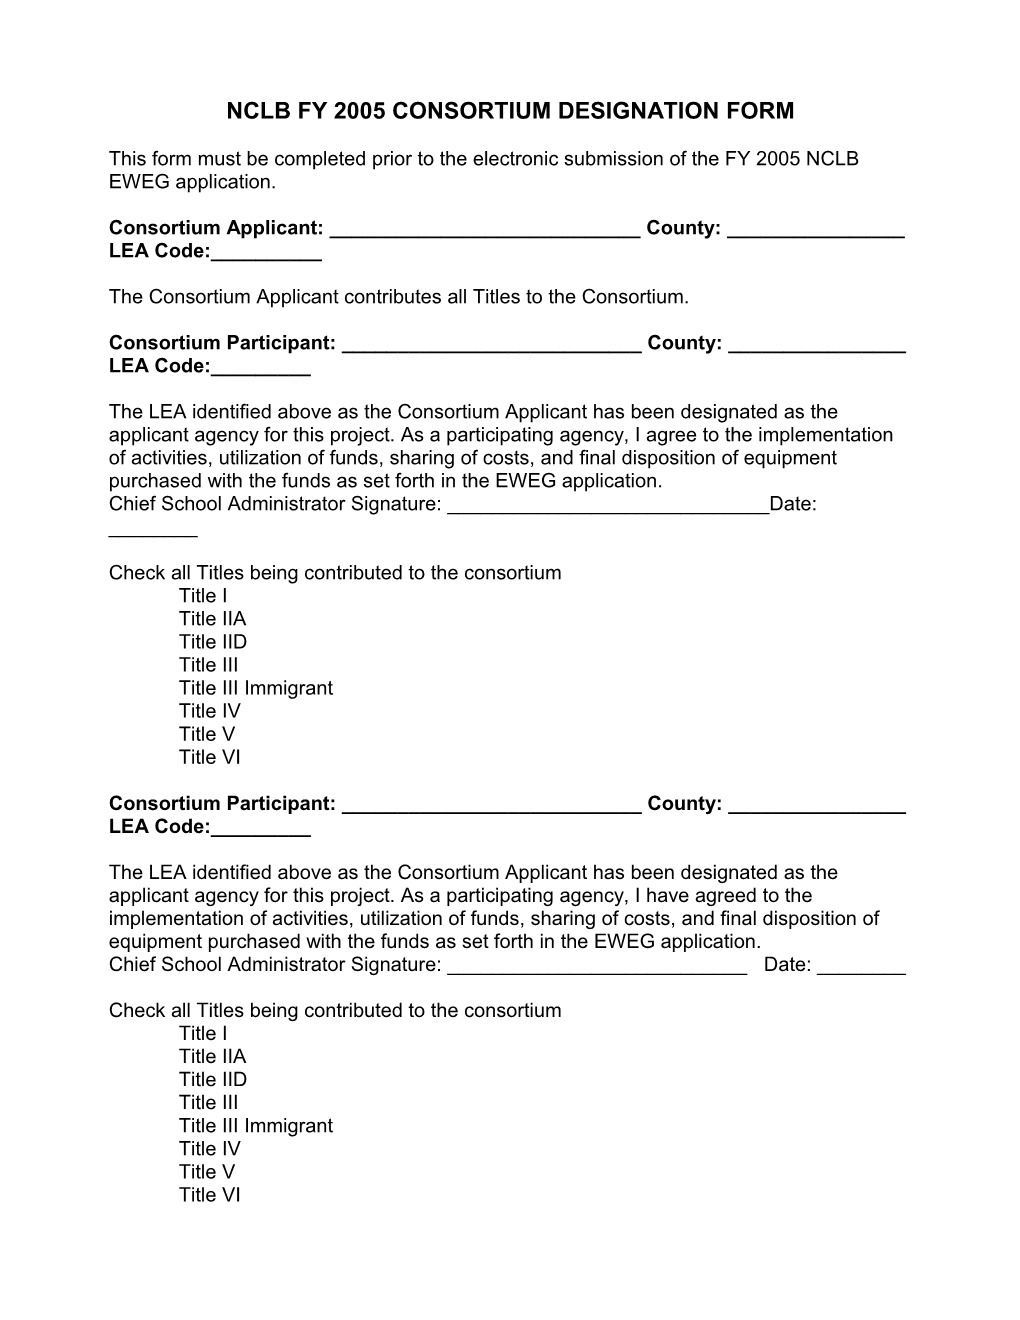 Nclb Consortium Designation Form